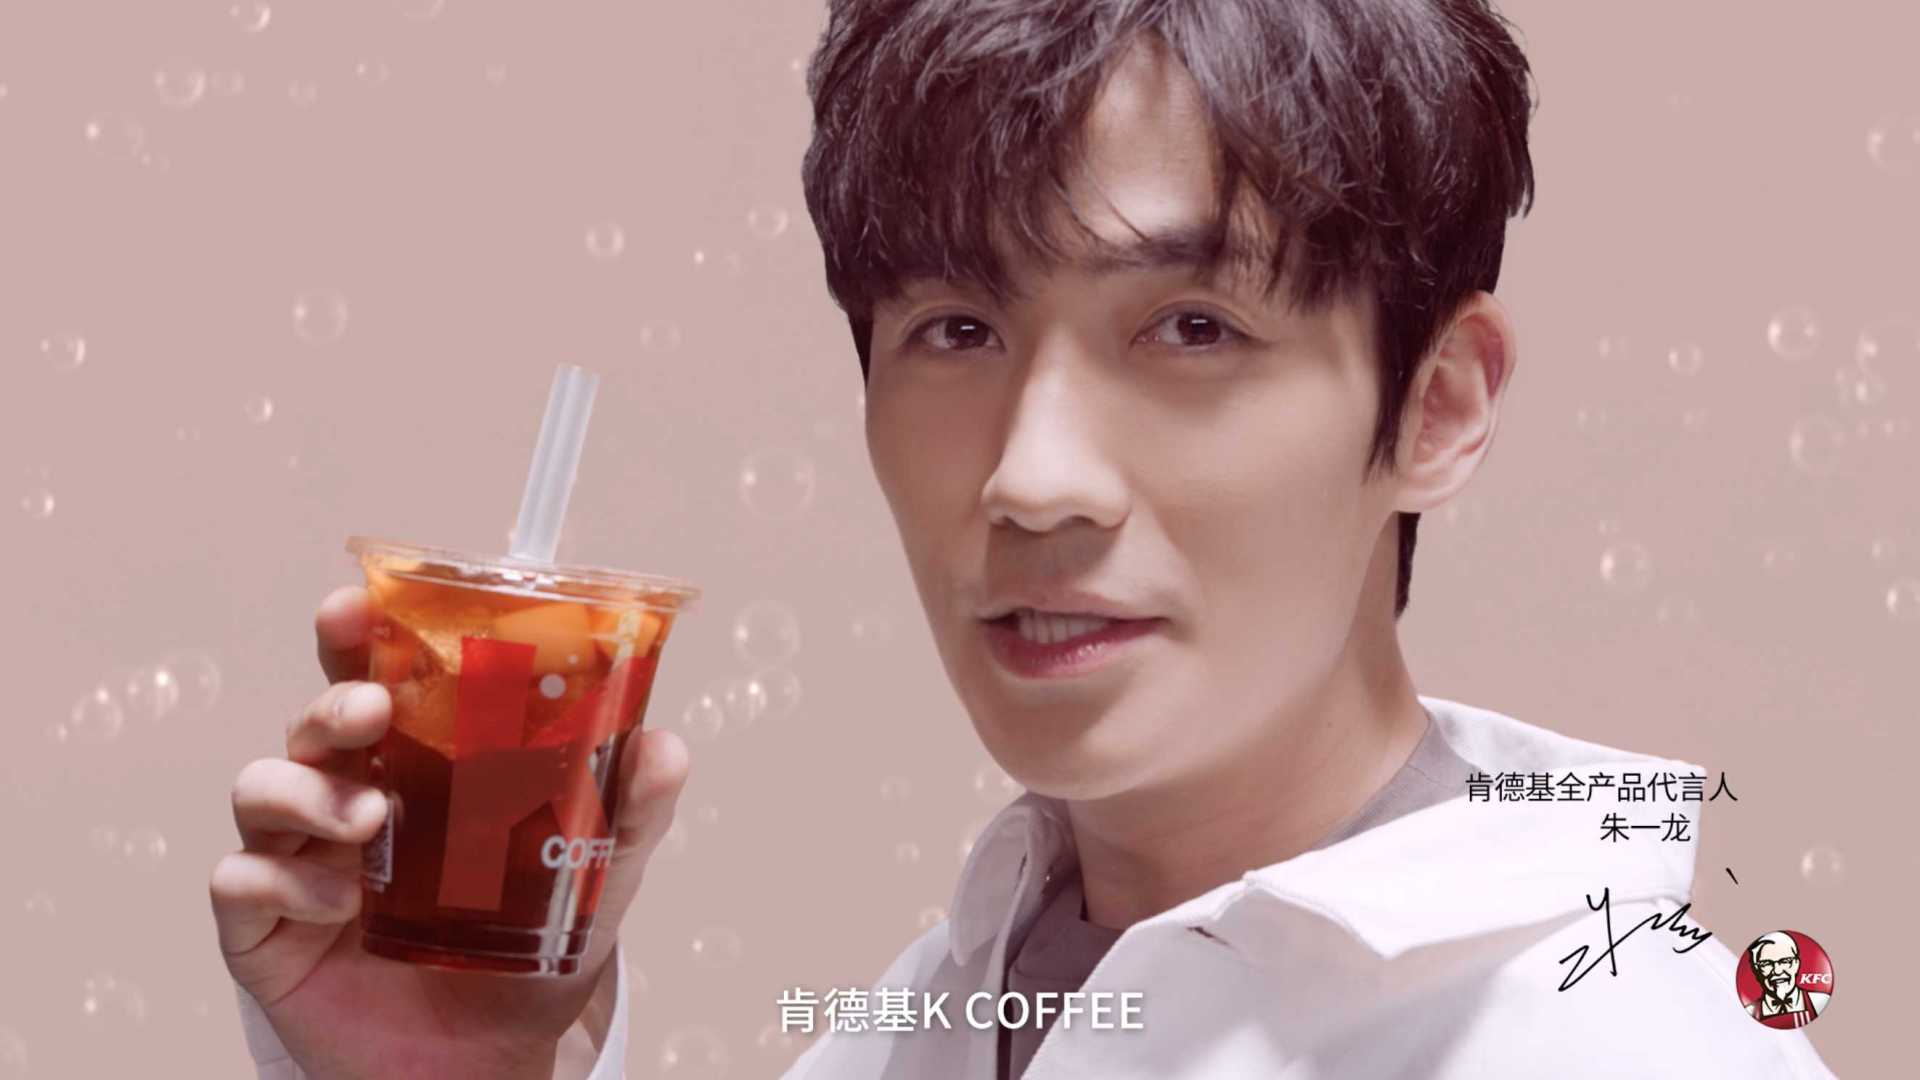 肯德基 KFC 桃桃气泡冰咖啡 - 朱一龙